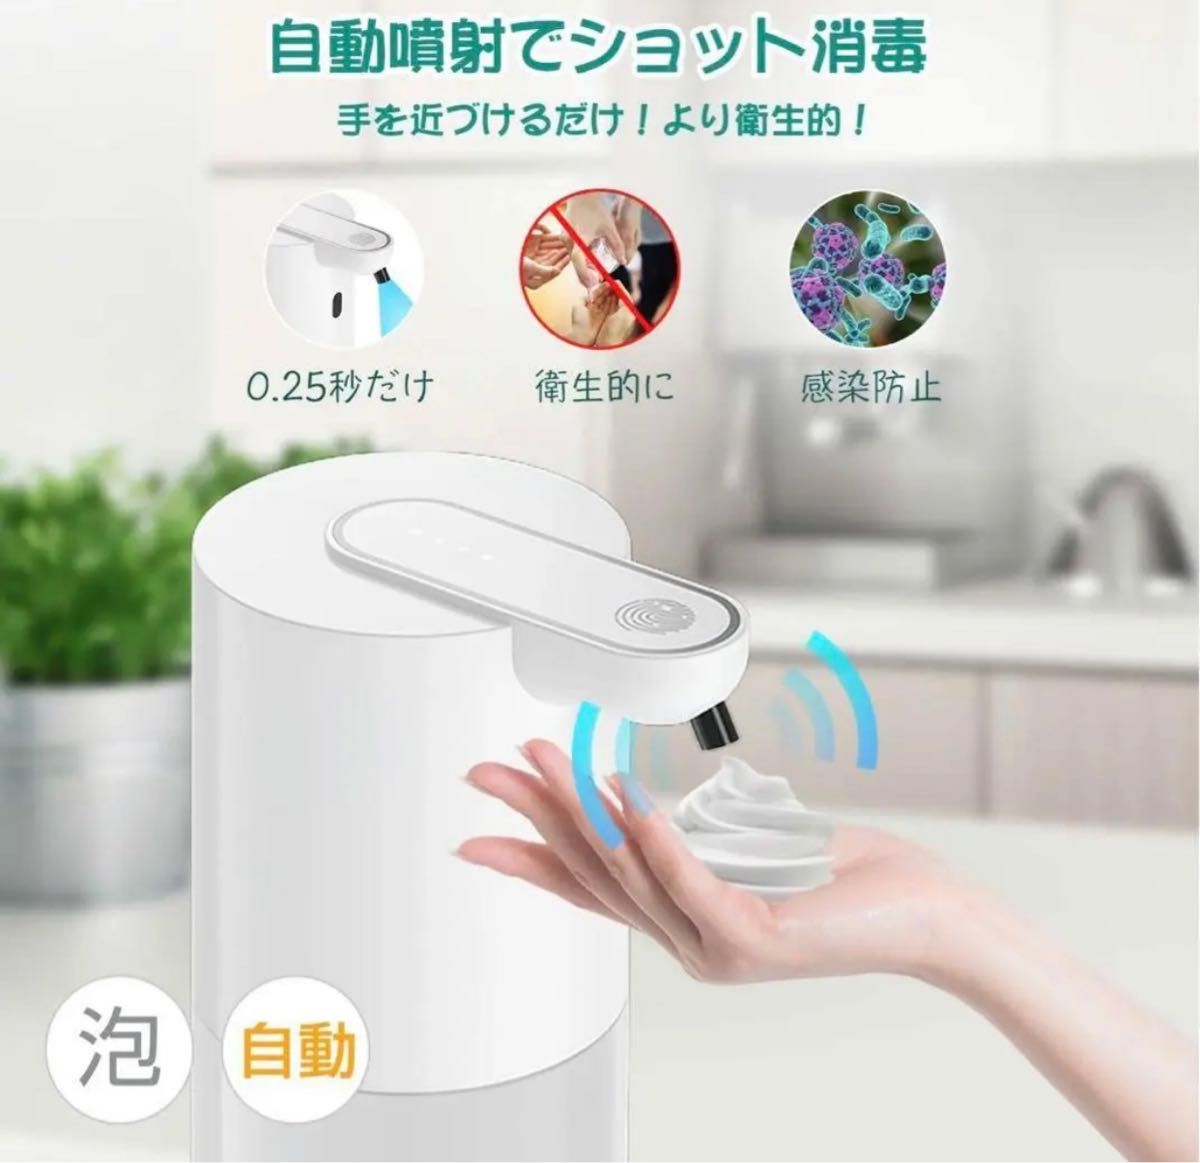 ソープディスペンサー 自動 泡 食器洗剤 ディスペンサー 400ml